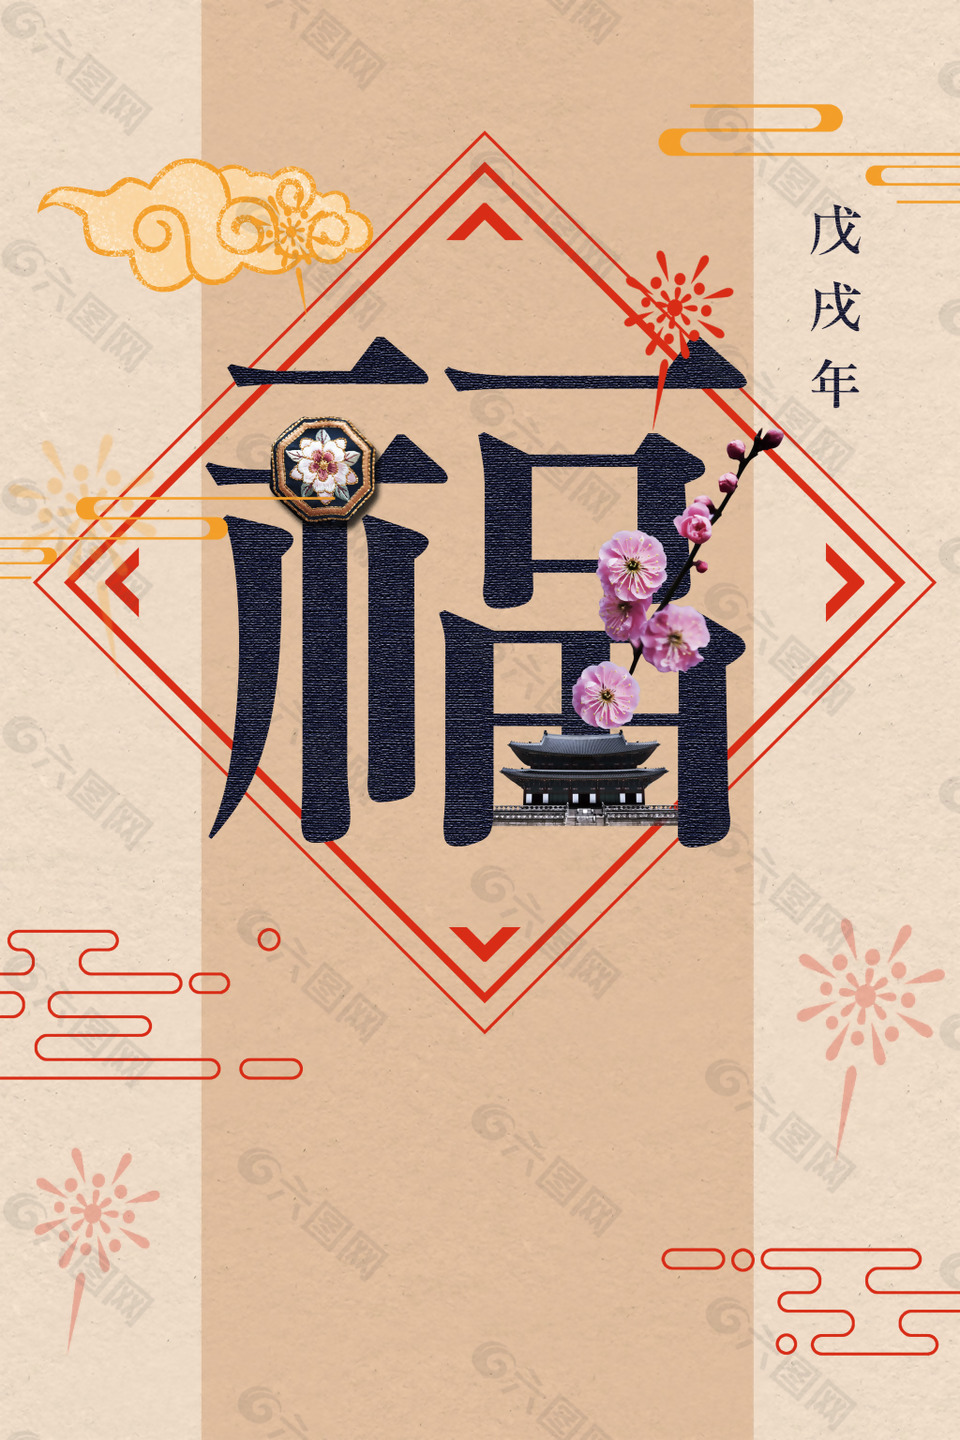 2018年狗年福字中国风商场促销海报